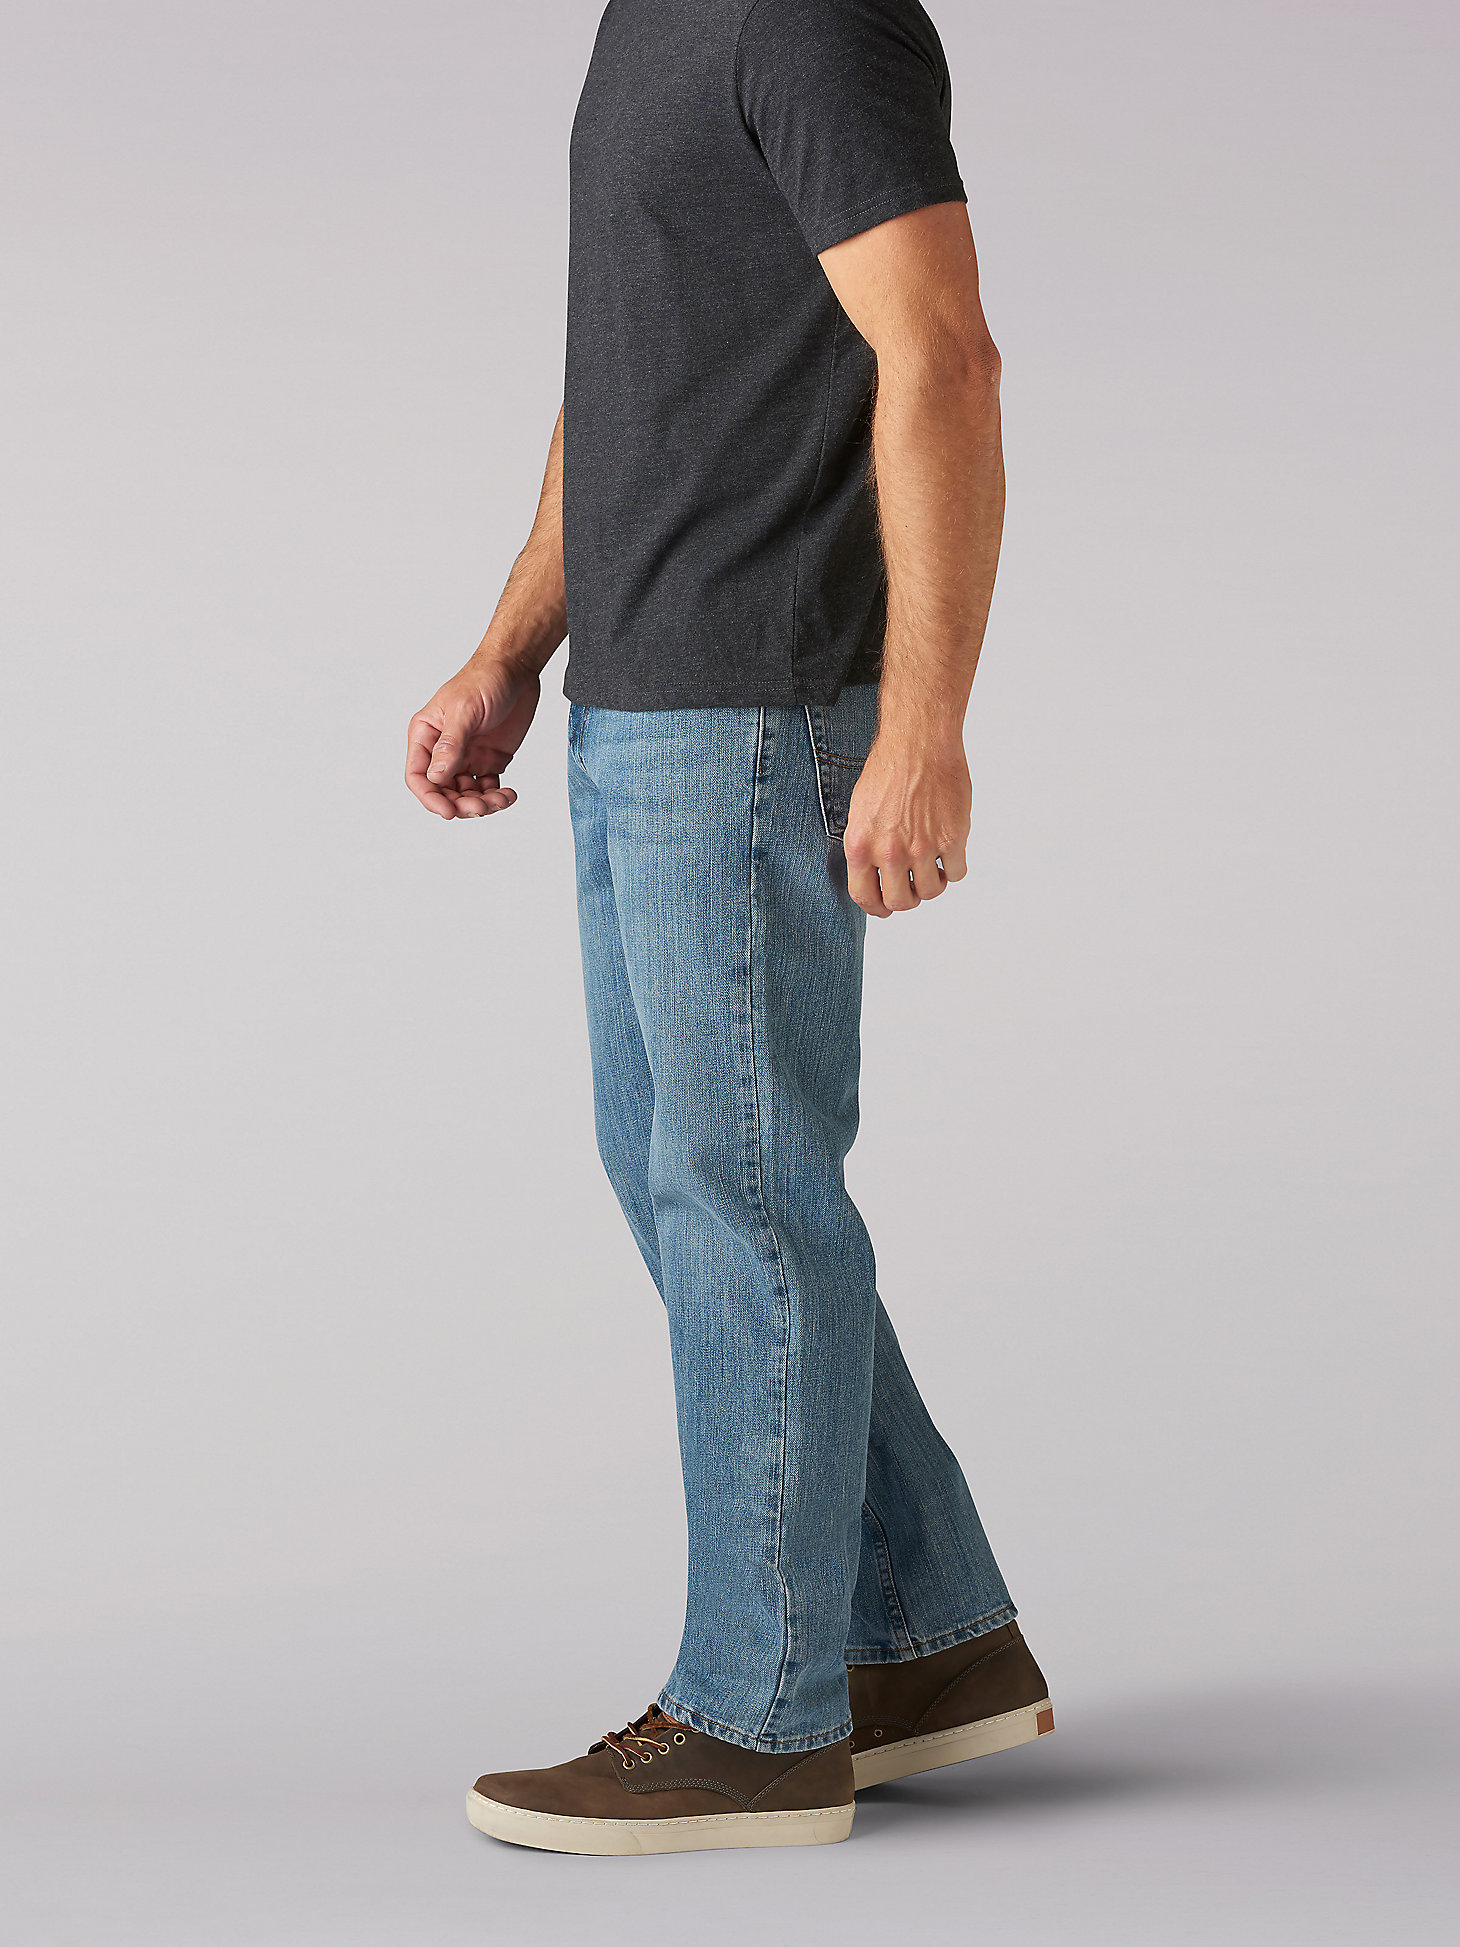 Men's Regular Fit Straight Leg Jeans in Dakota